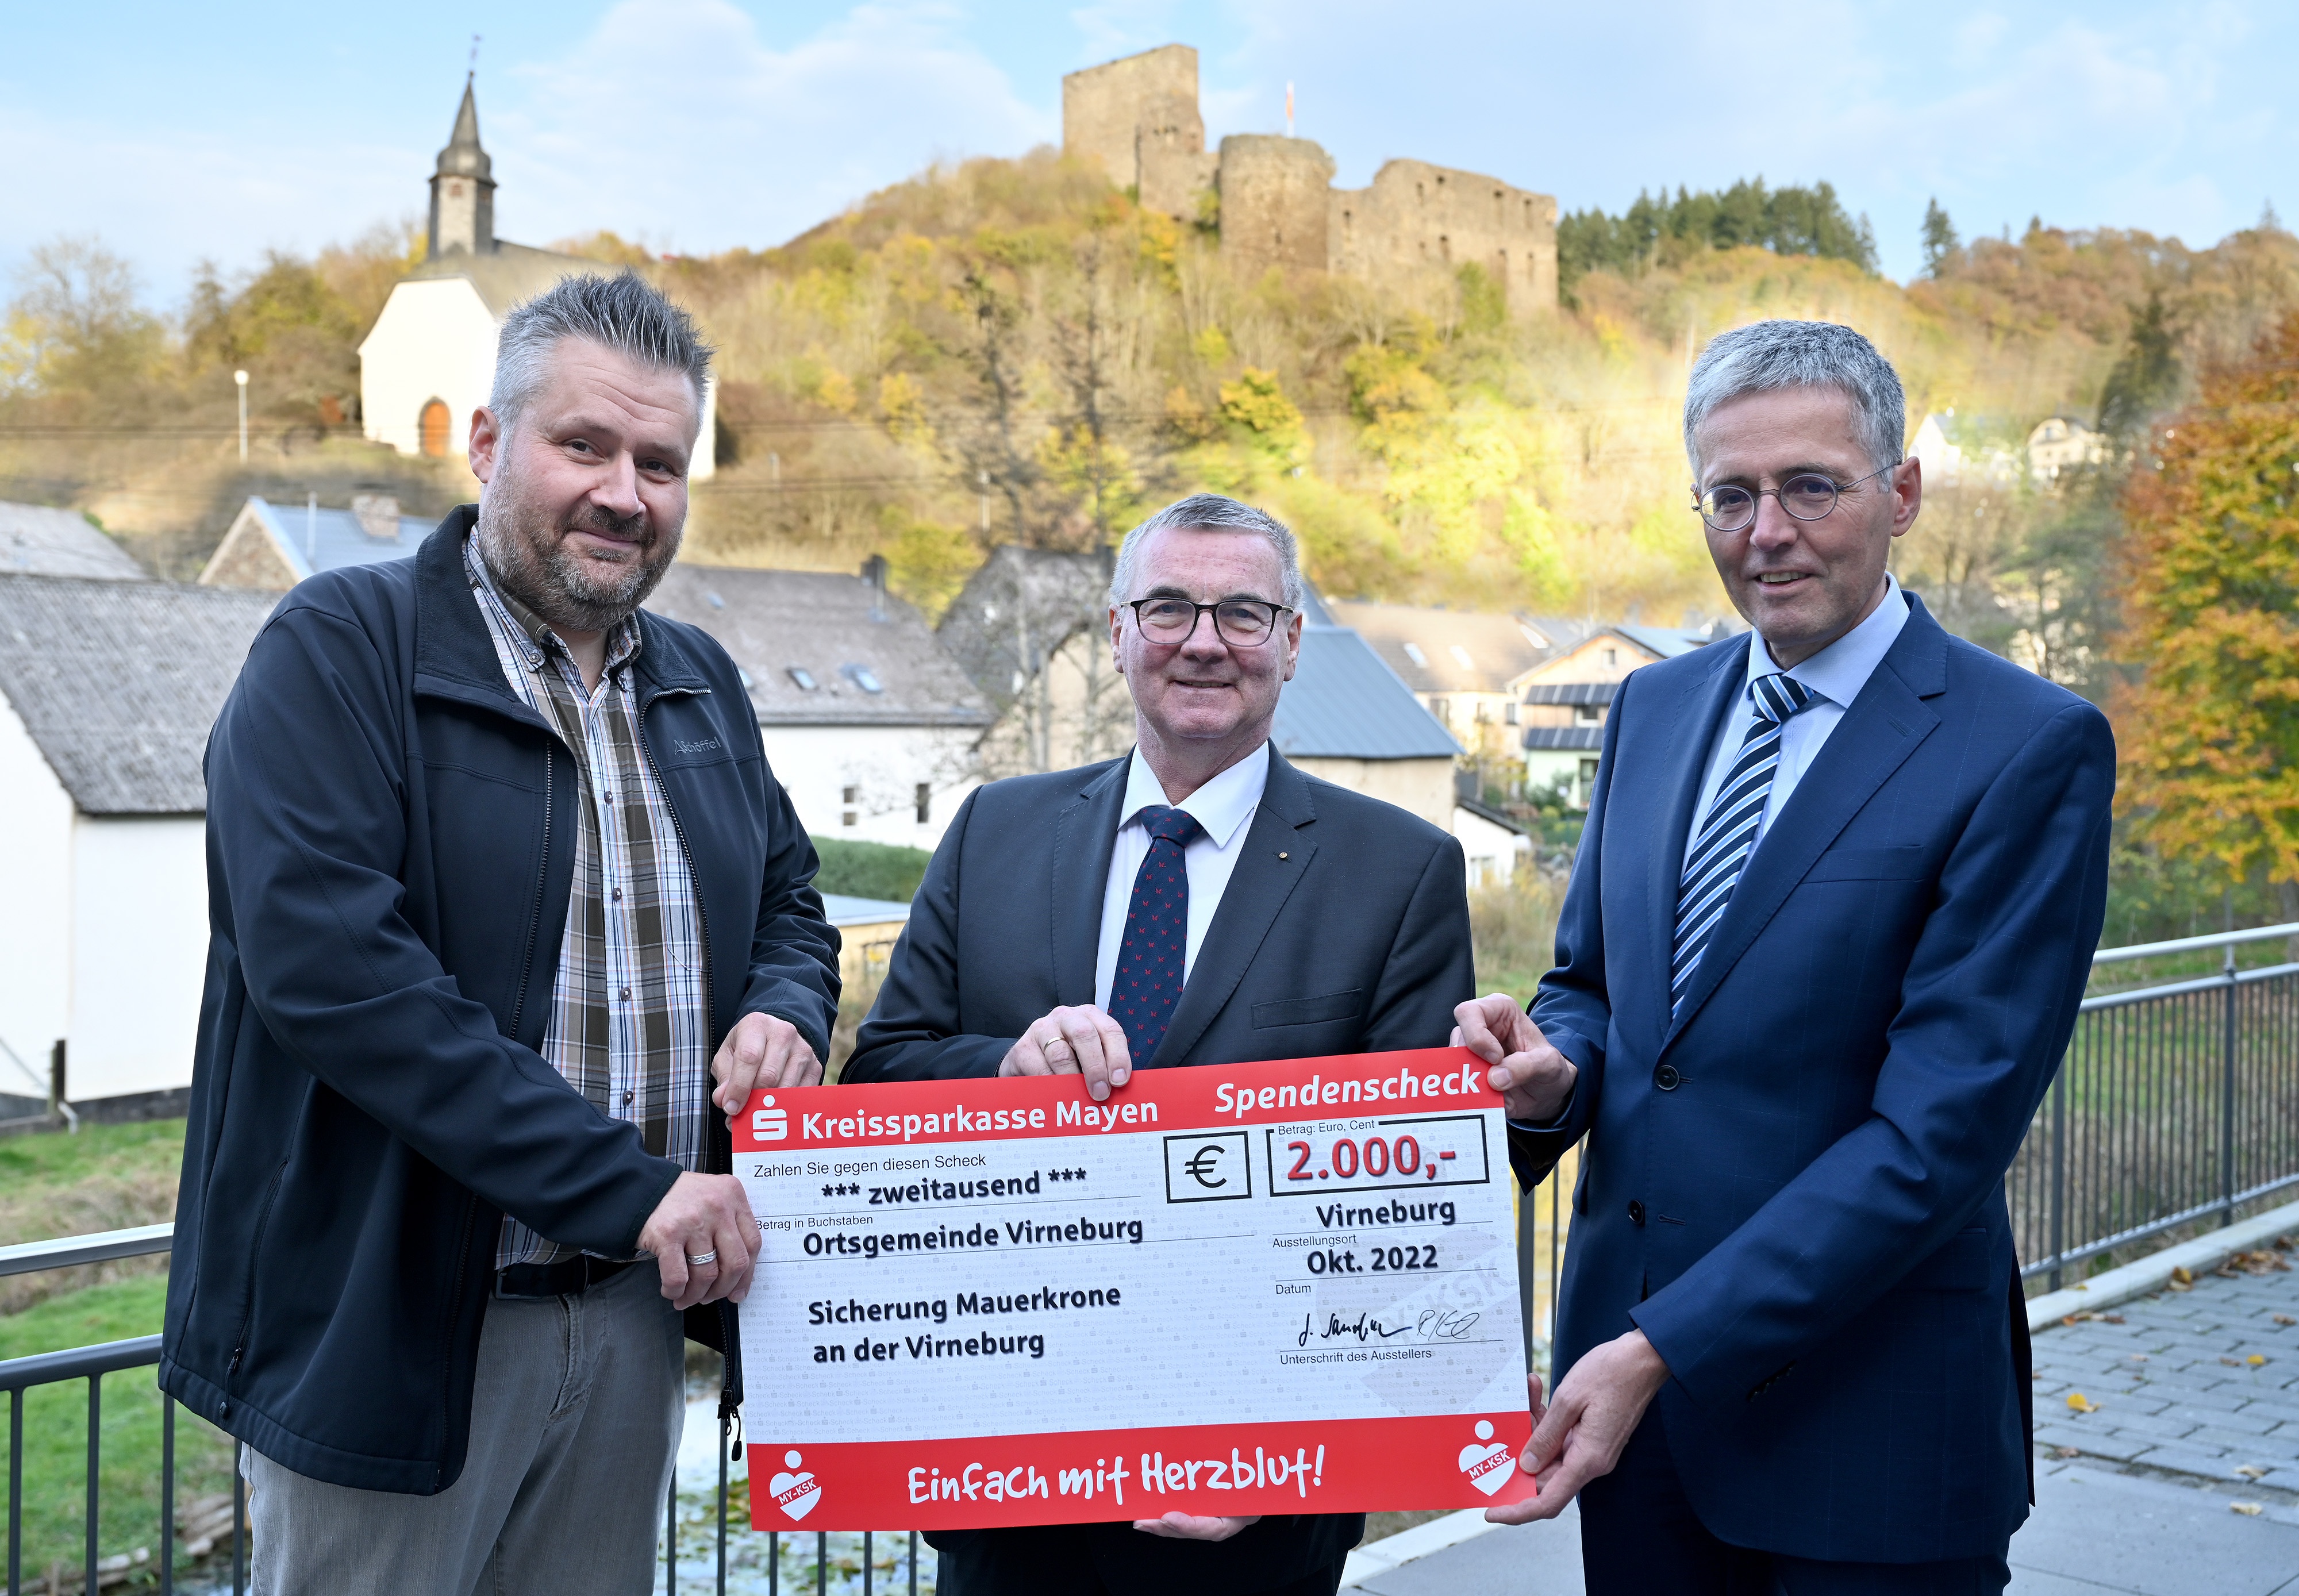 Burgturm in Virneburg mit transparentem Netz gesichert; KSK unterstützt mit 2000 Euro